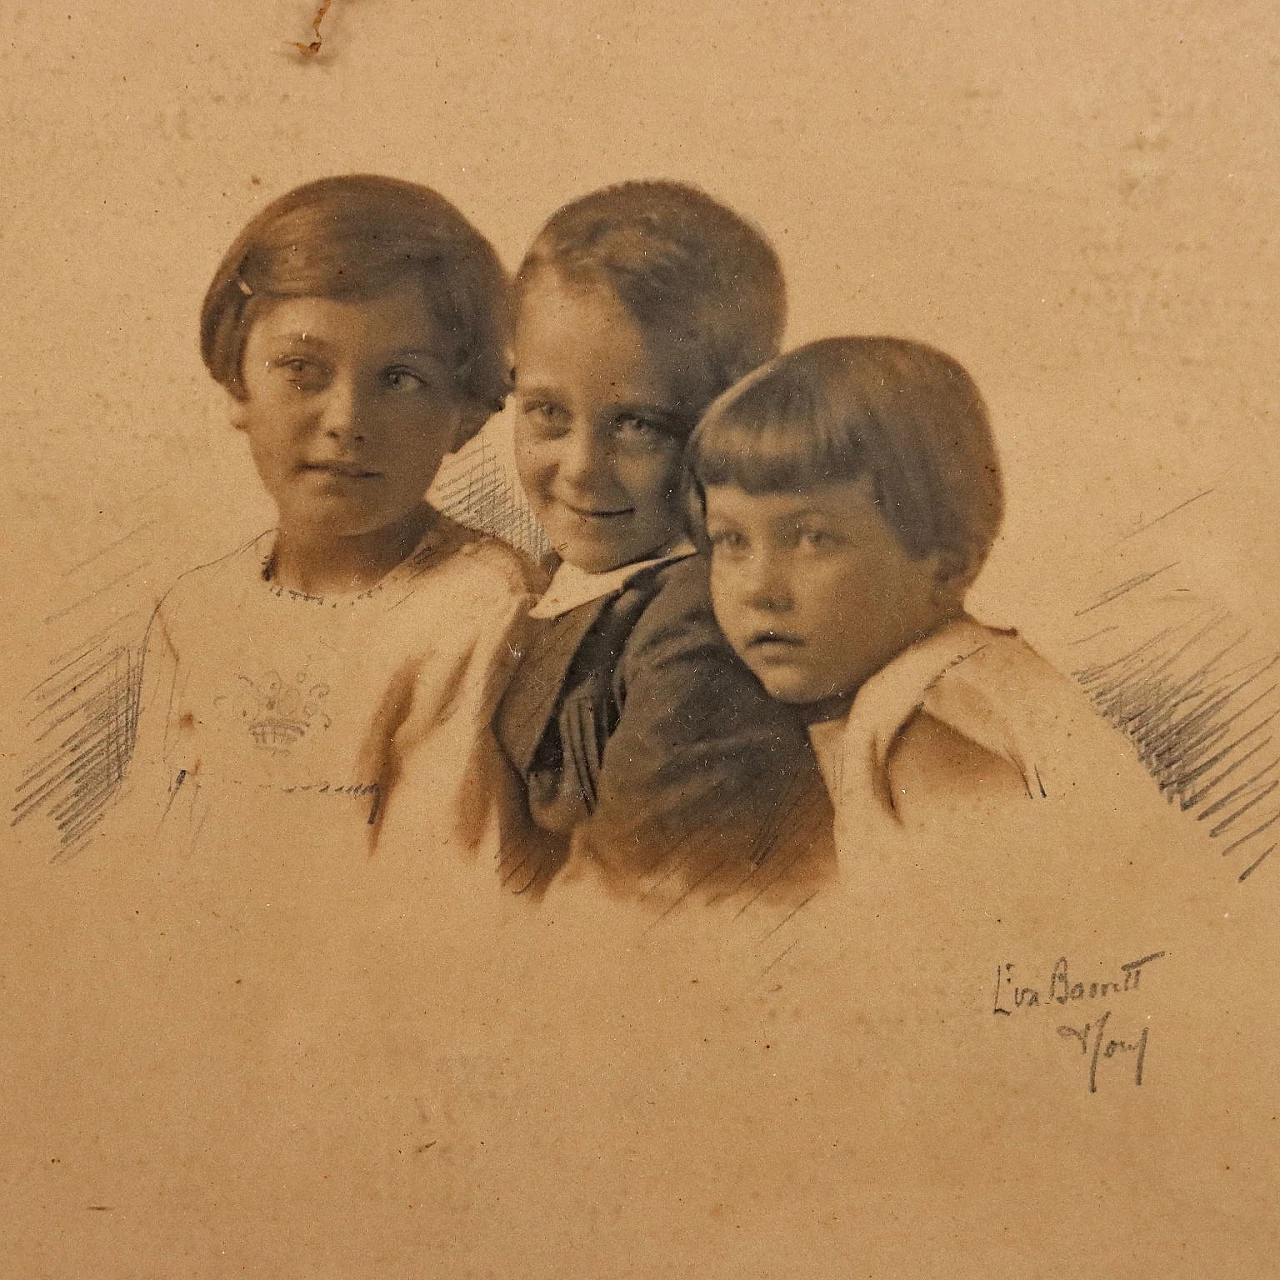 Eva Barrett, 4 ritratti di bambini, fotografie, 1930 4